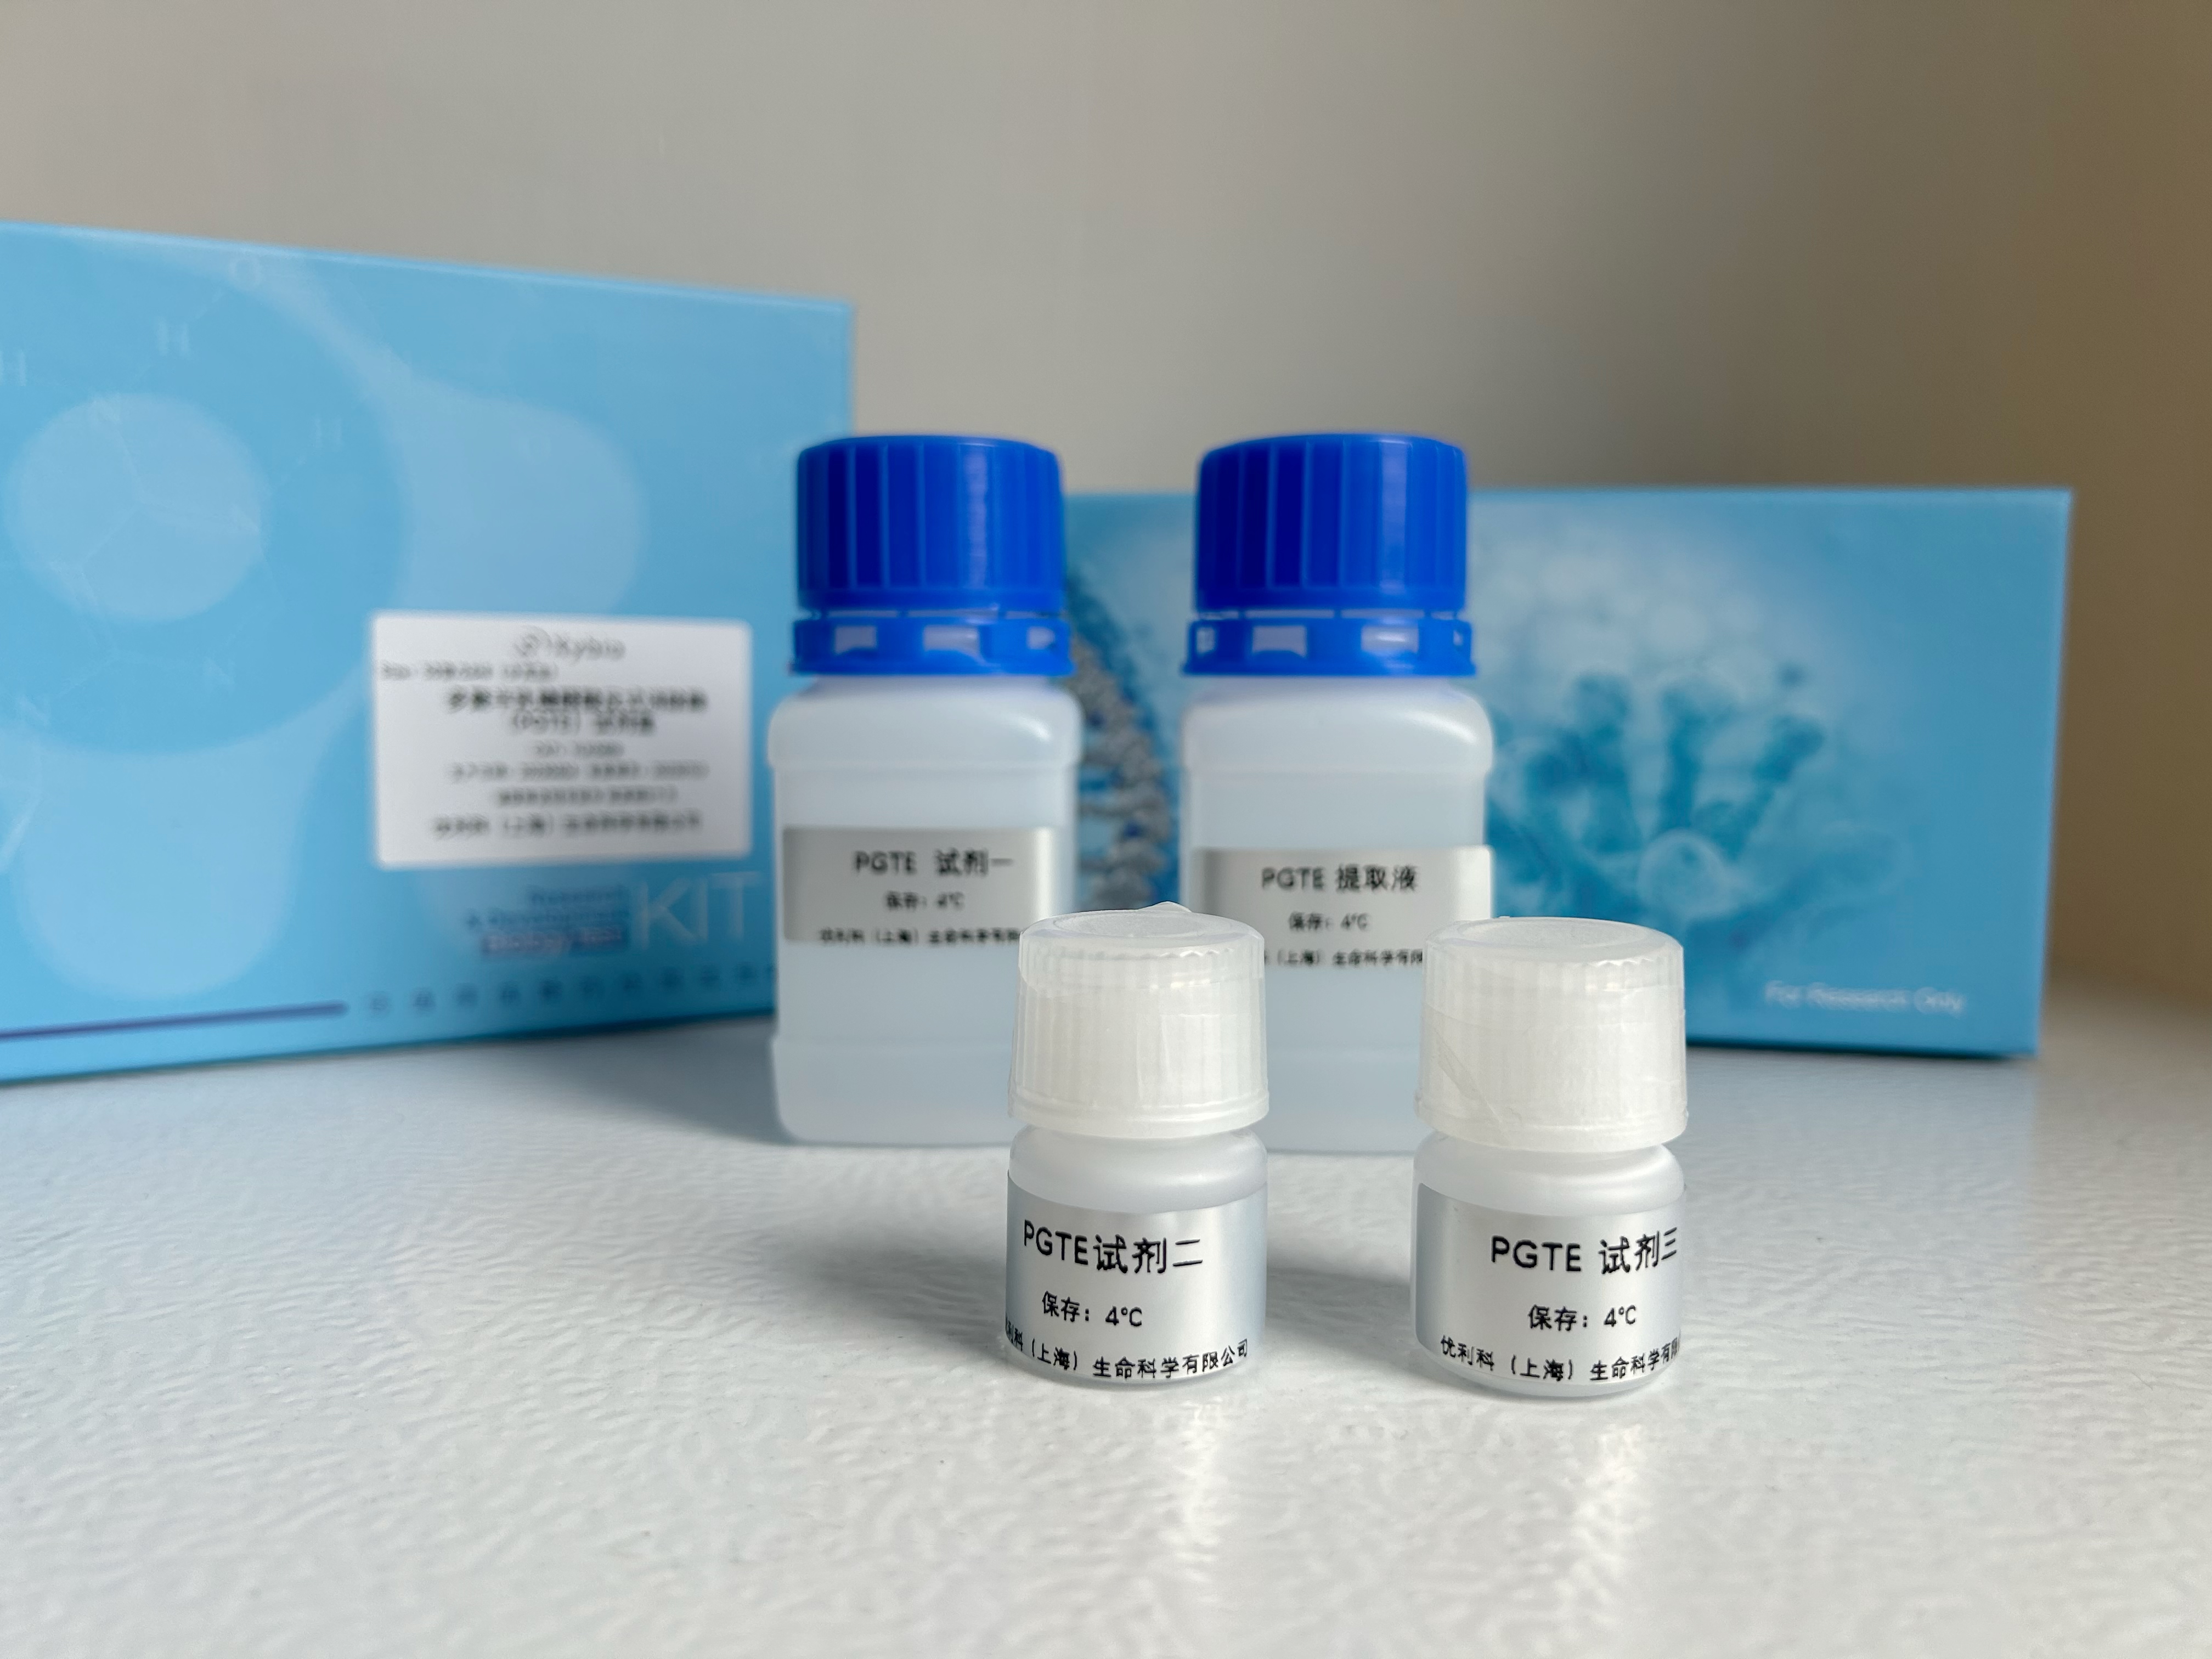 多聚半乳糖醛酸反式消除酶(PGTE)测试盒